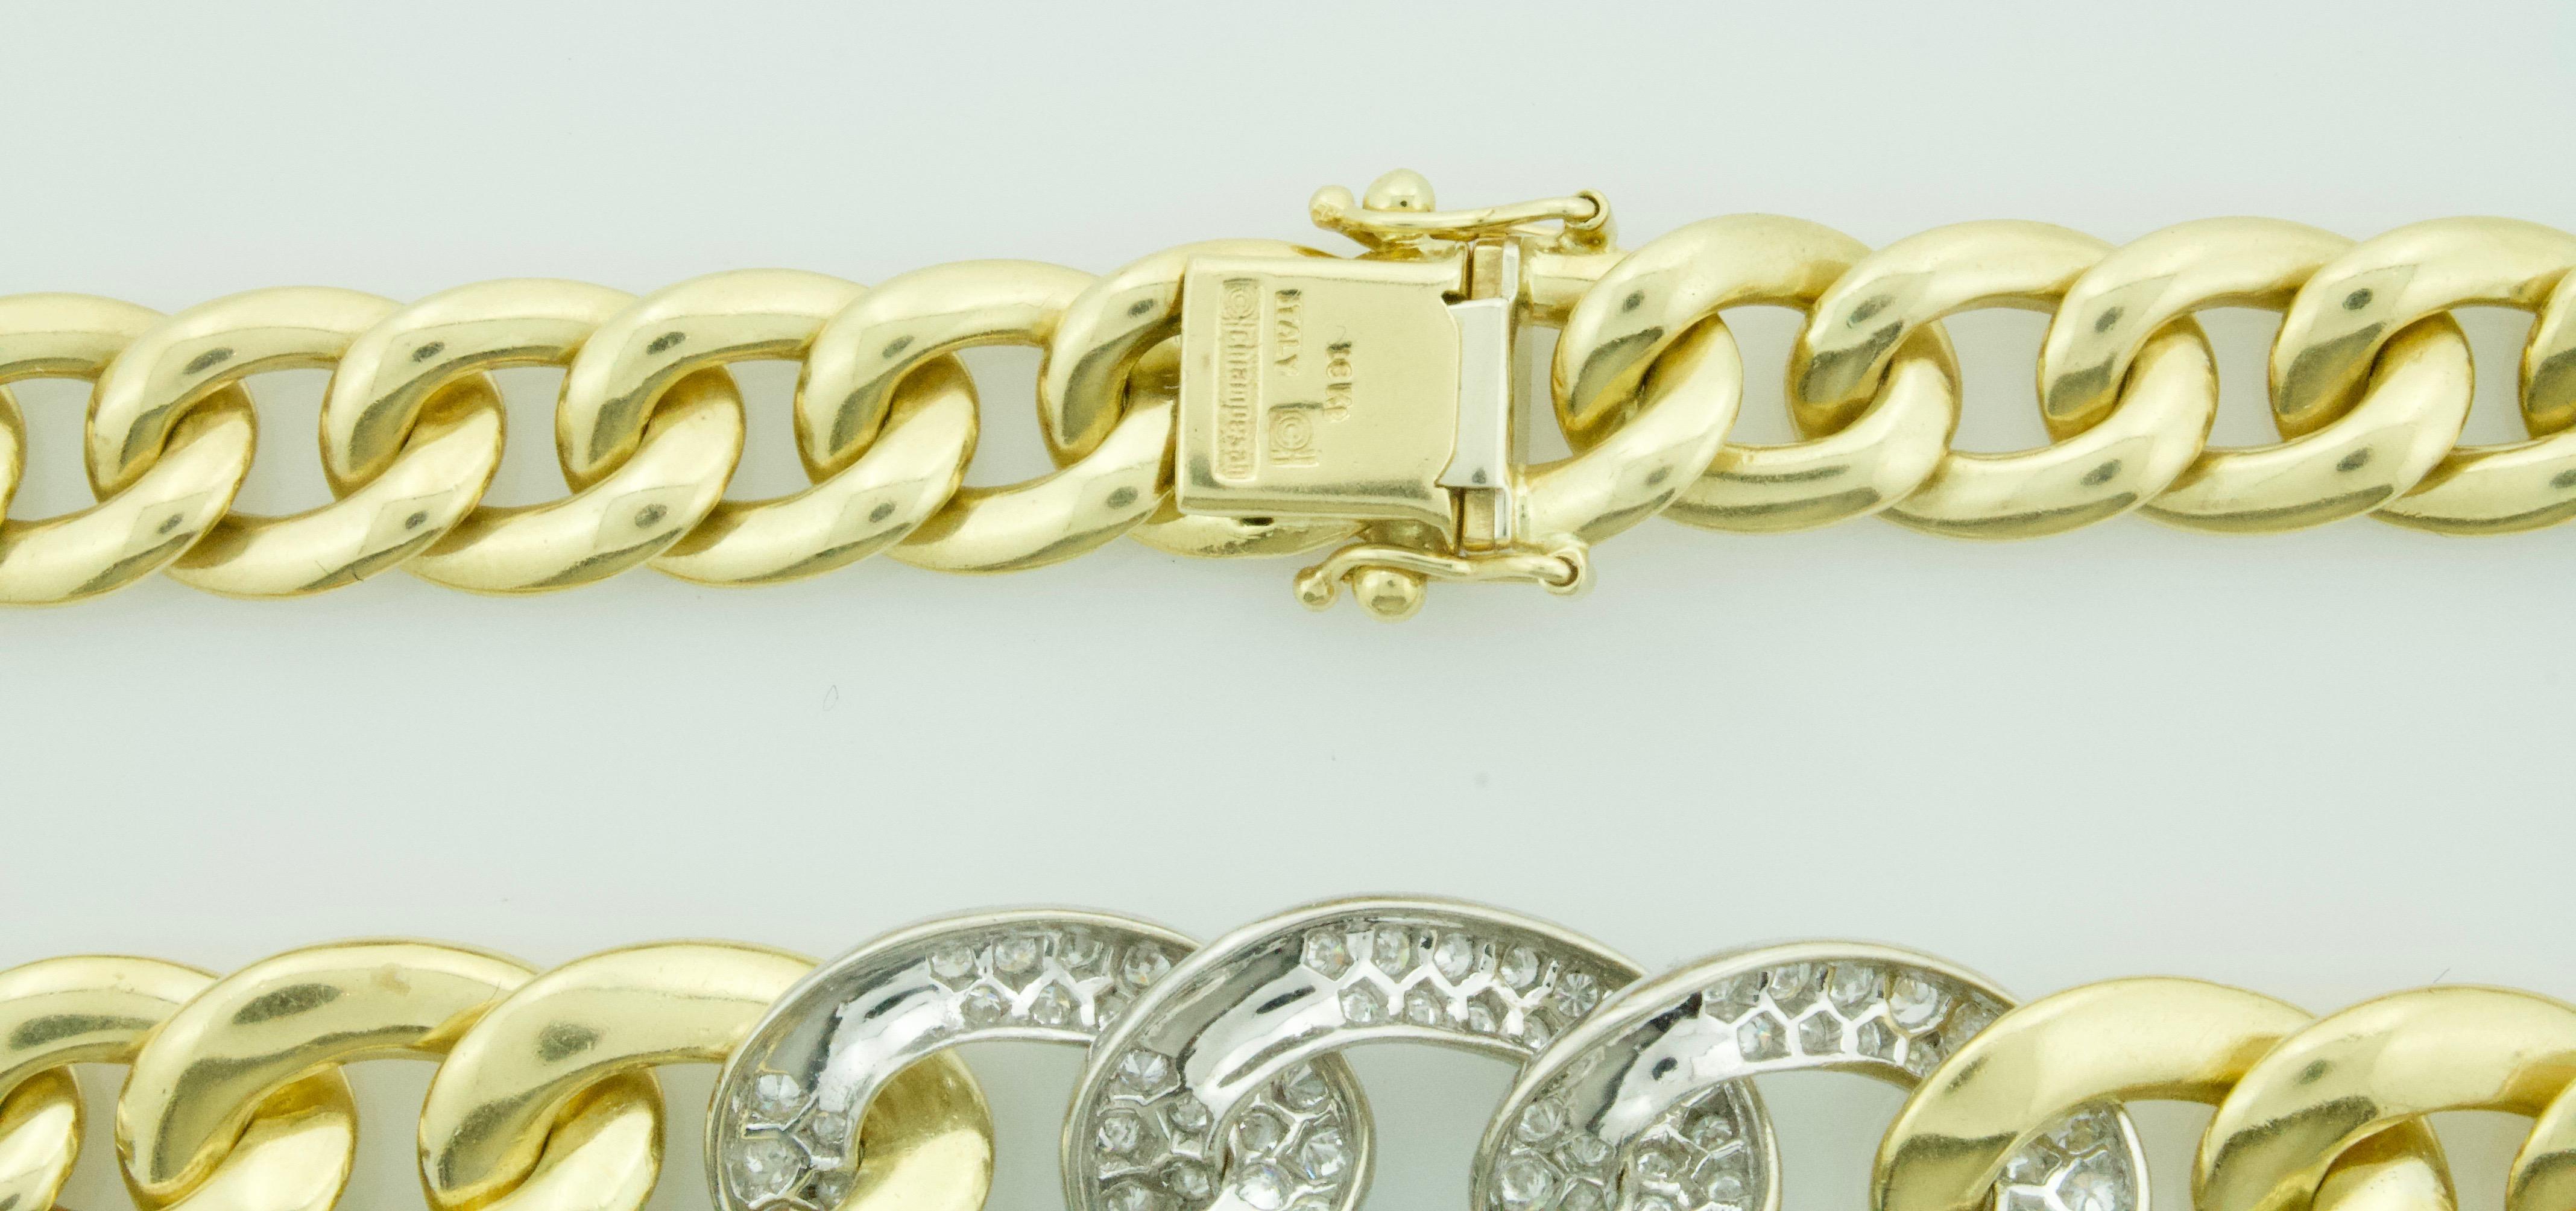 Gönnen Sie sich das Erbe des italienischen Luxus mit der Chiampesan of Italy 18k Pave Diamond Cuban Link Necklace - wo Tradition auf Innovation in der Welt des feinen Schmucks trifft. Diese Halskette von Chiampesan, einem renommierten Namen, der